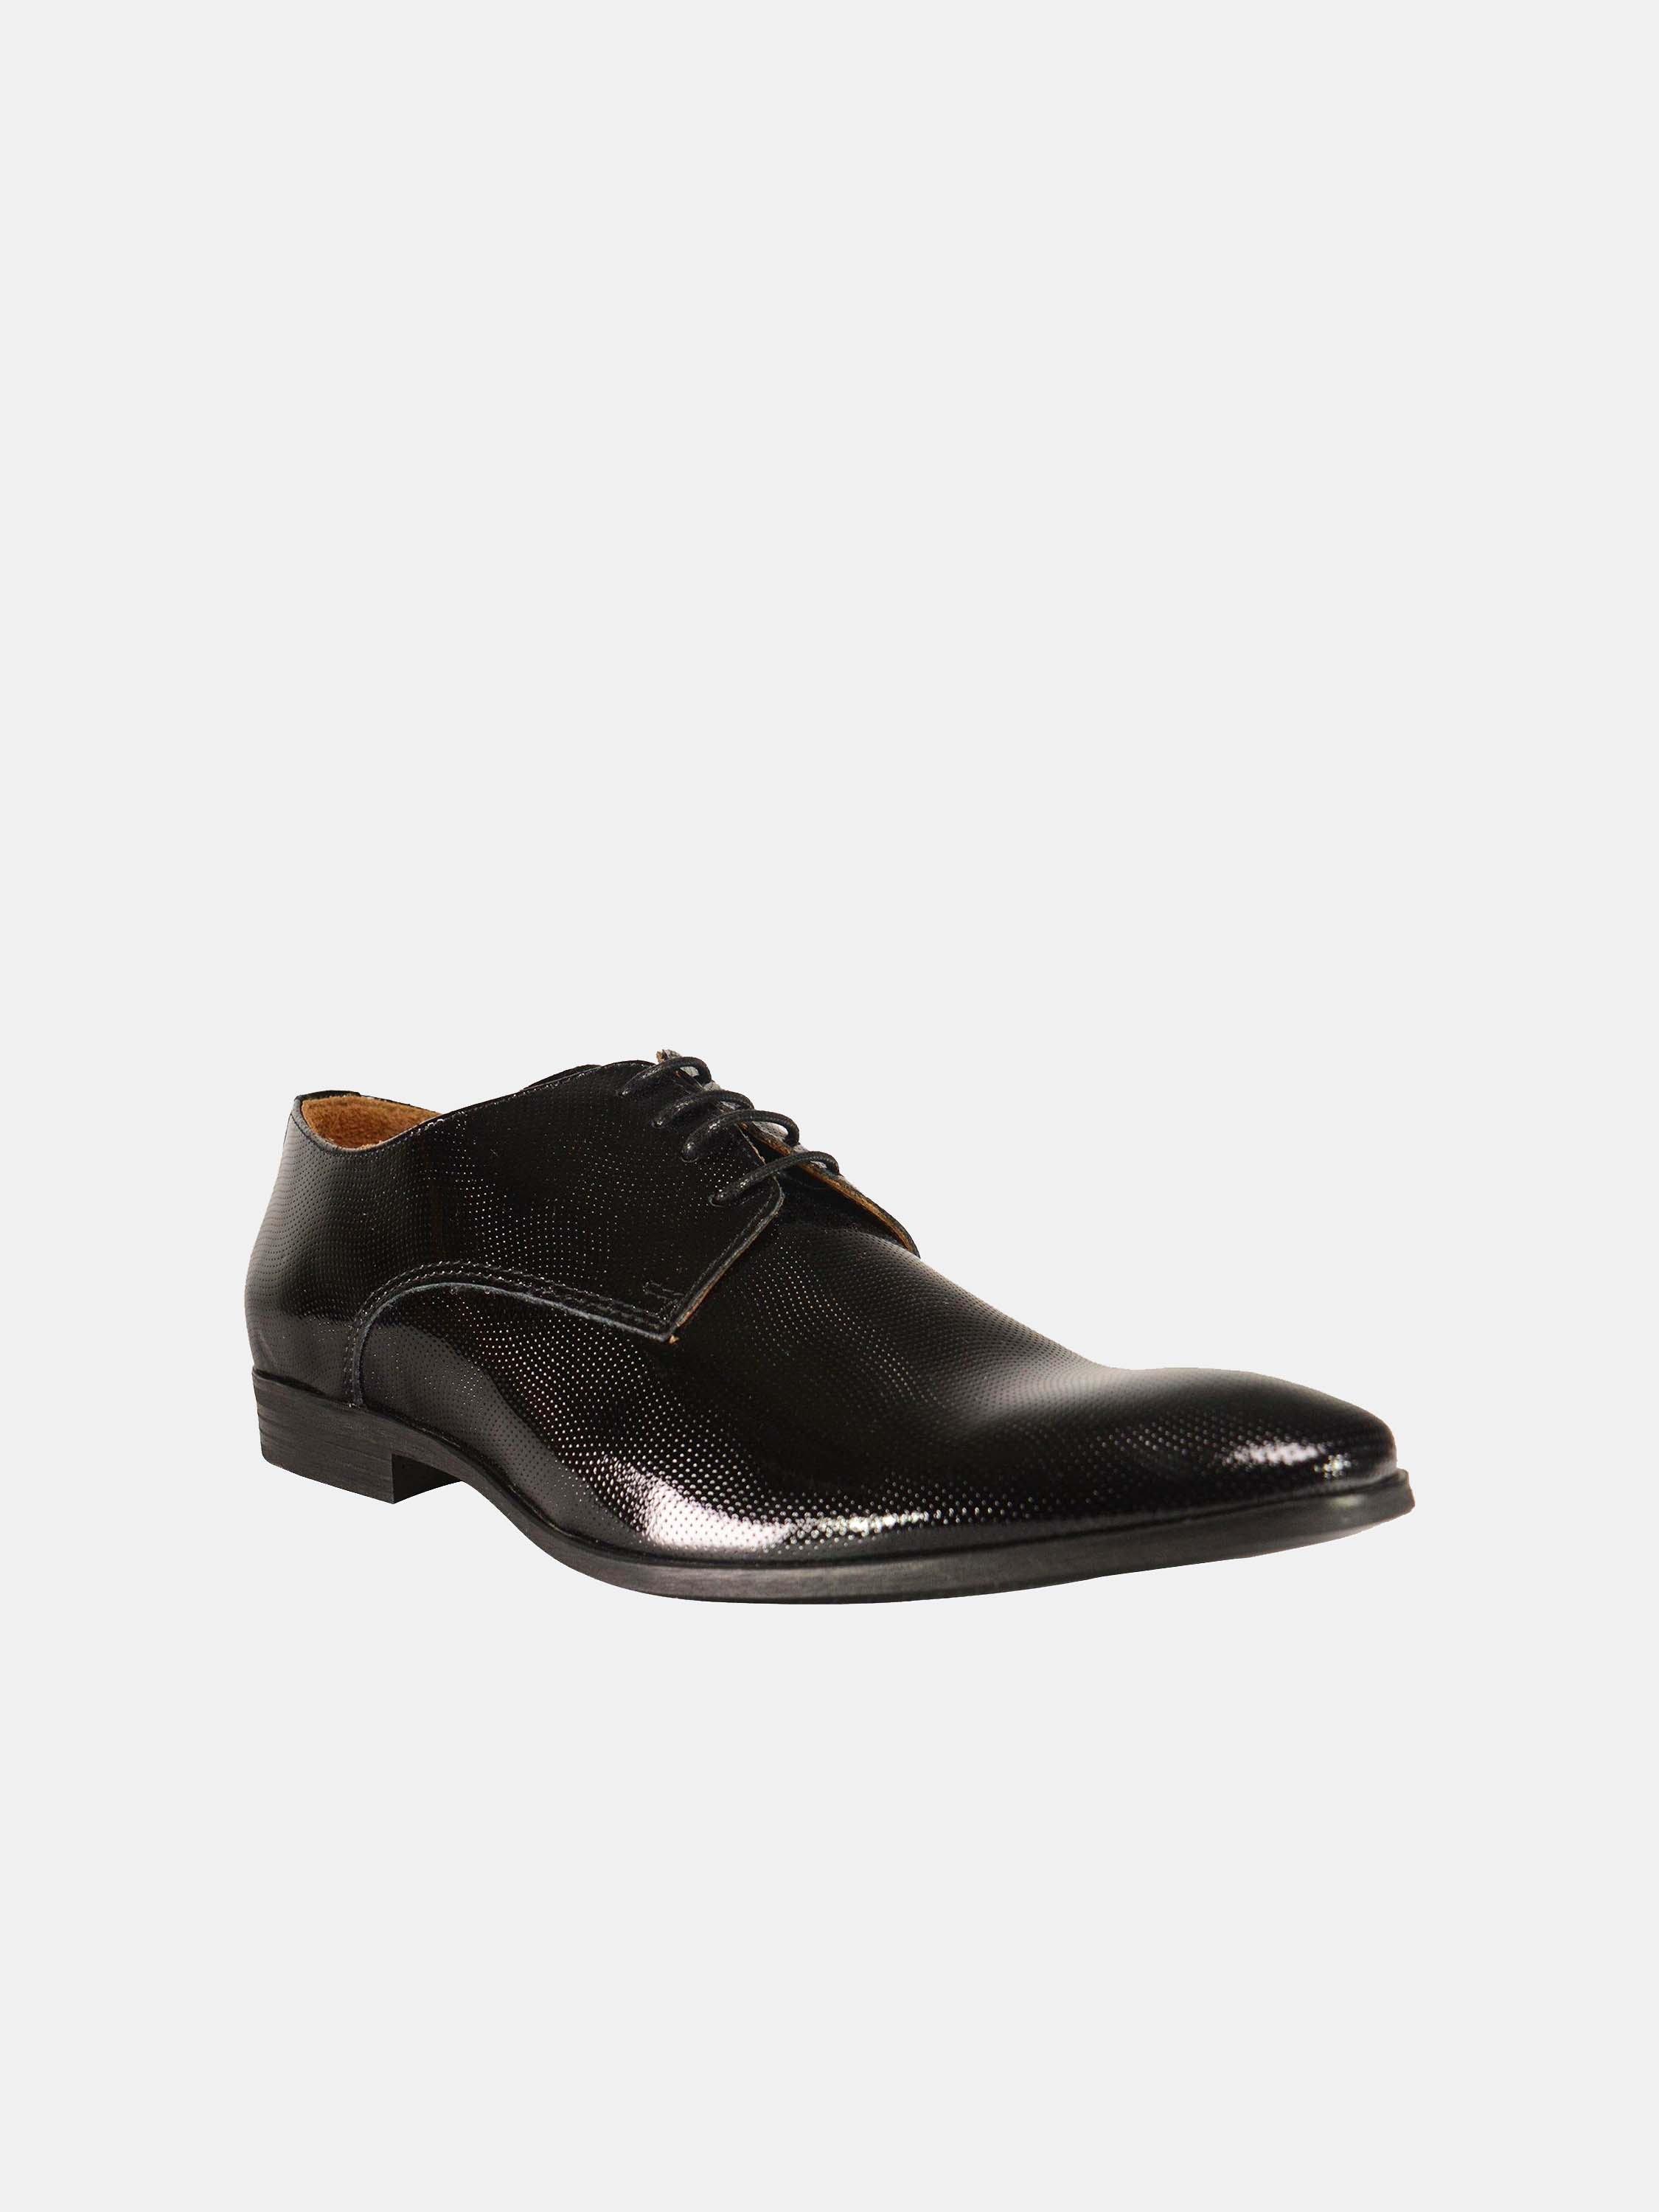 Franzini Men Formal Shoes in Black Leather #color_Black